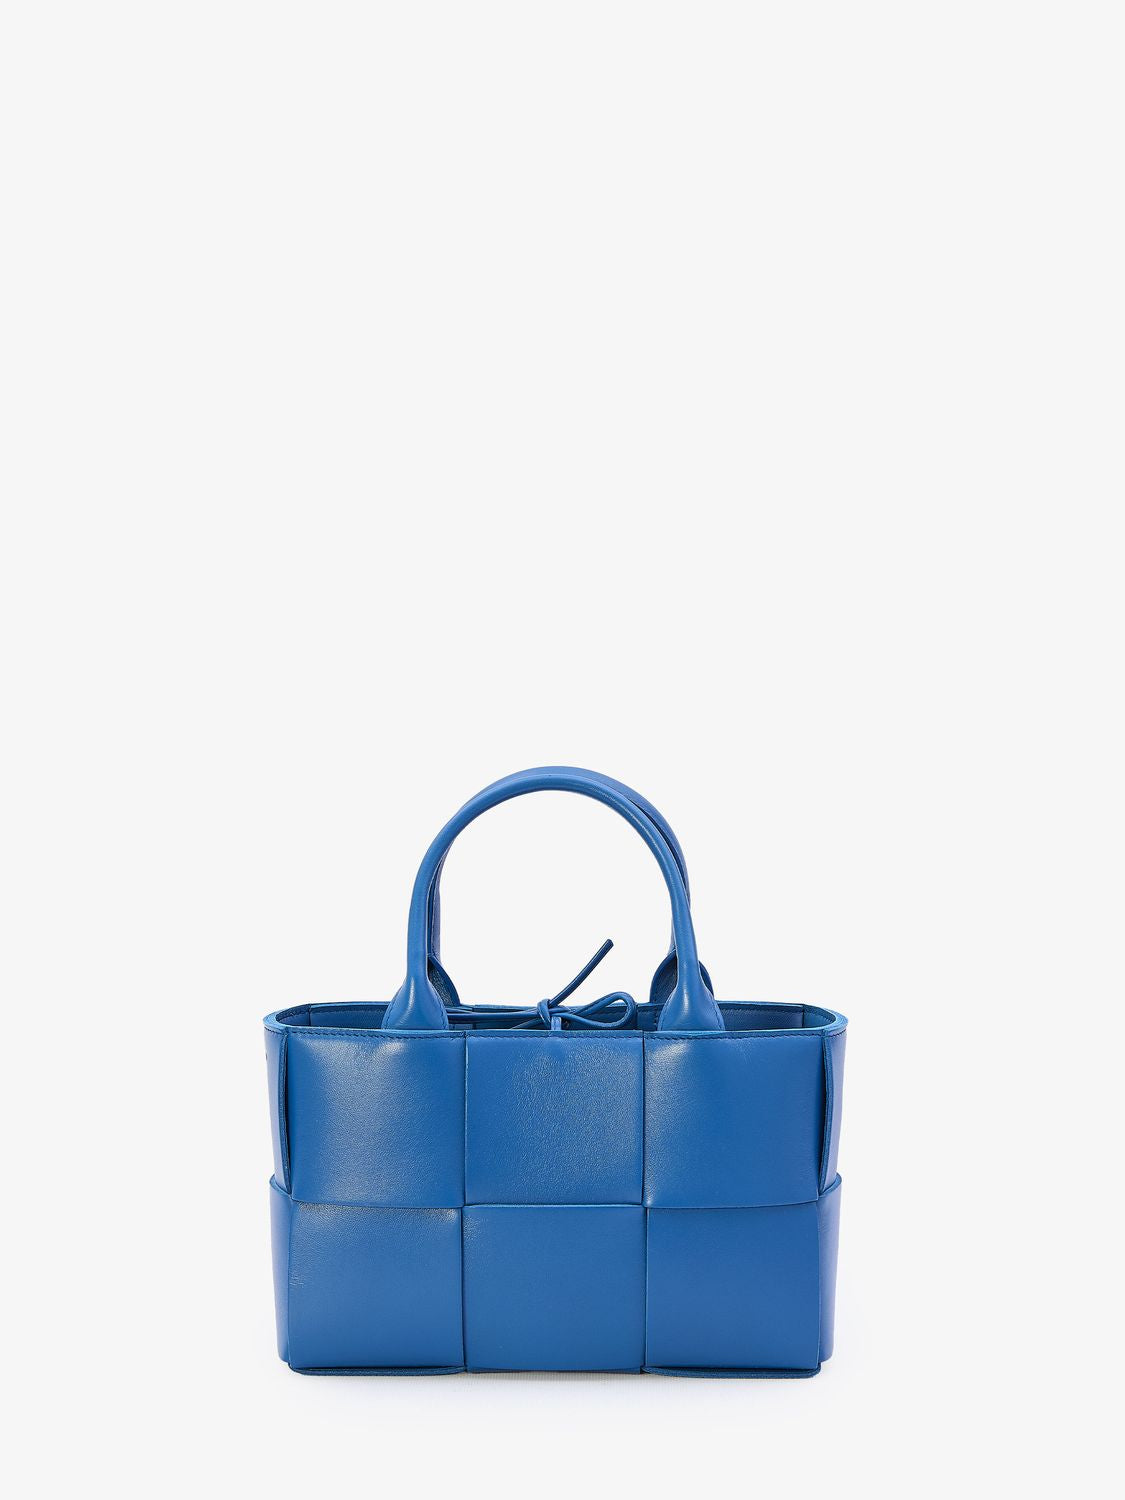 Blue Intreccio Pattern Mini Tote Handbag